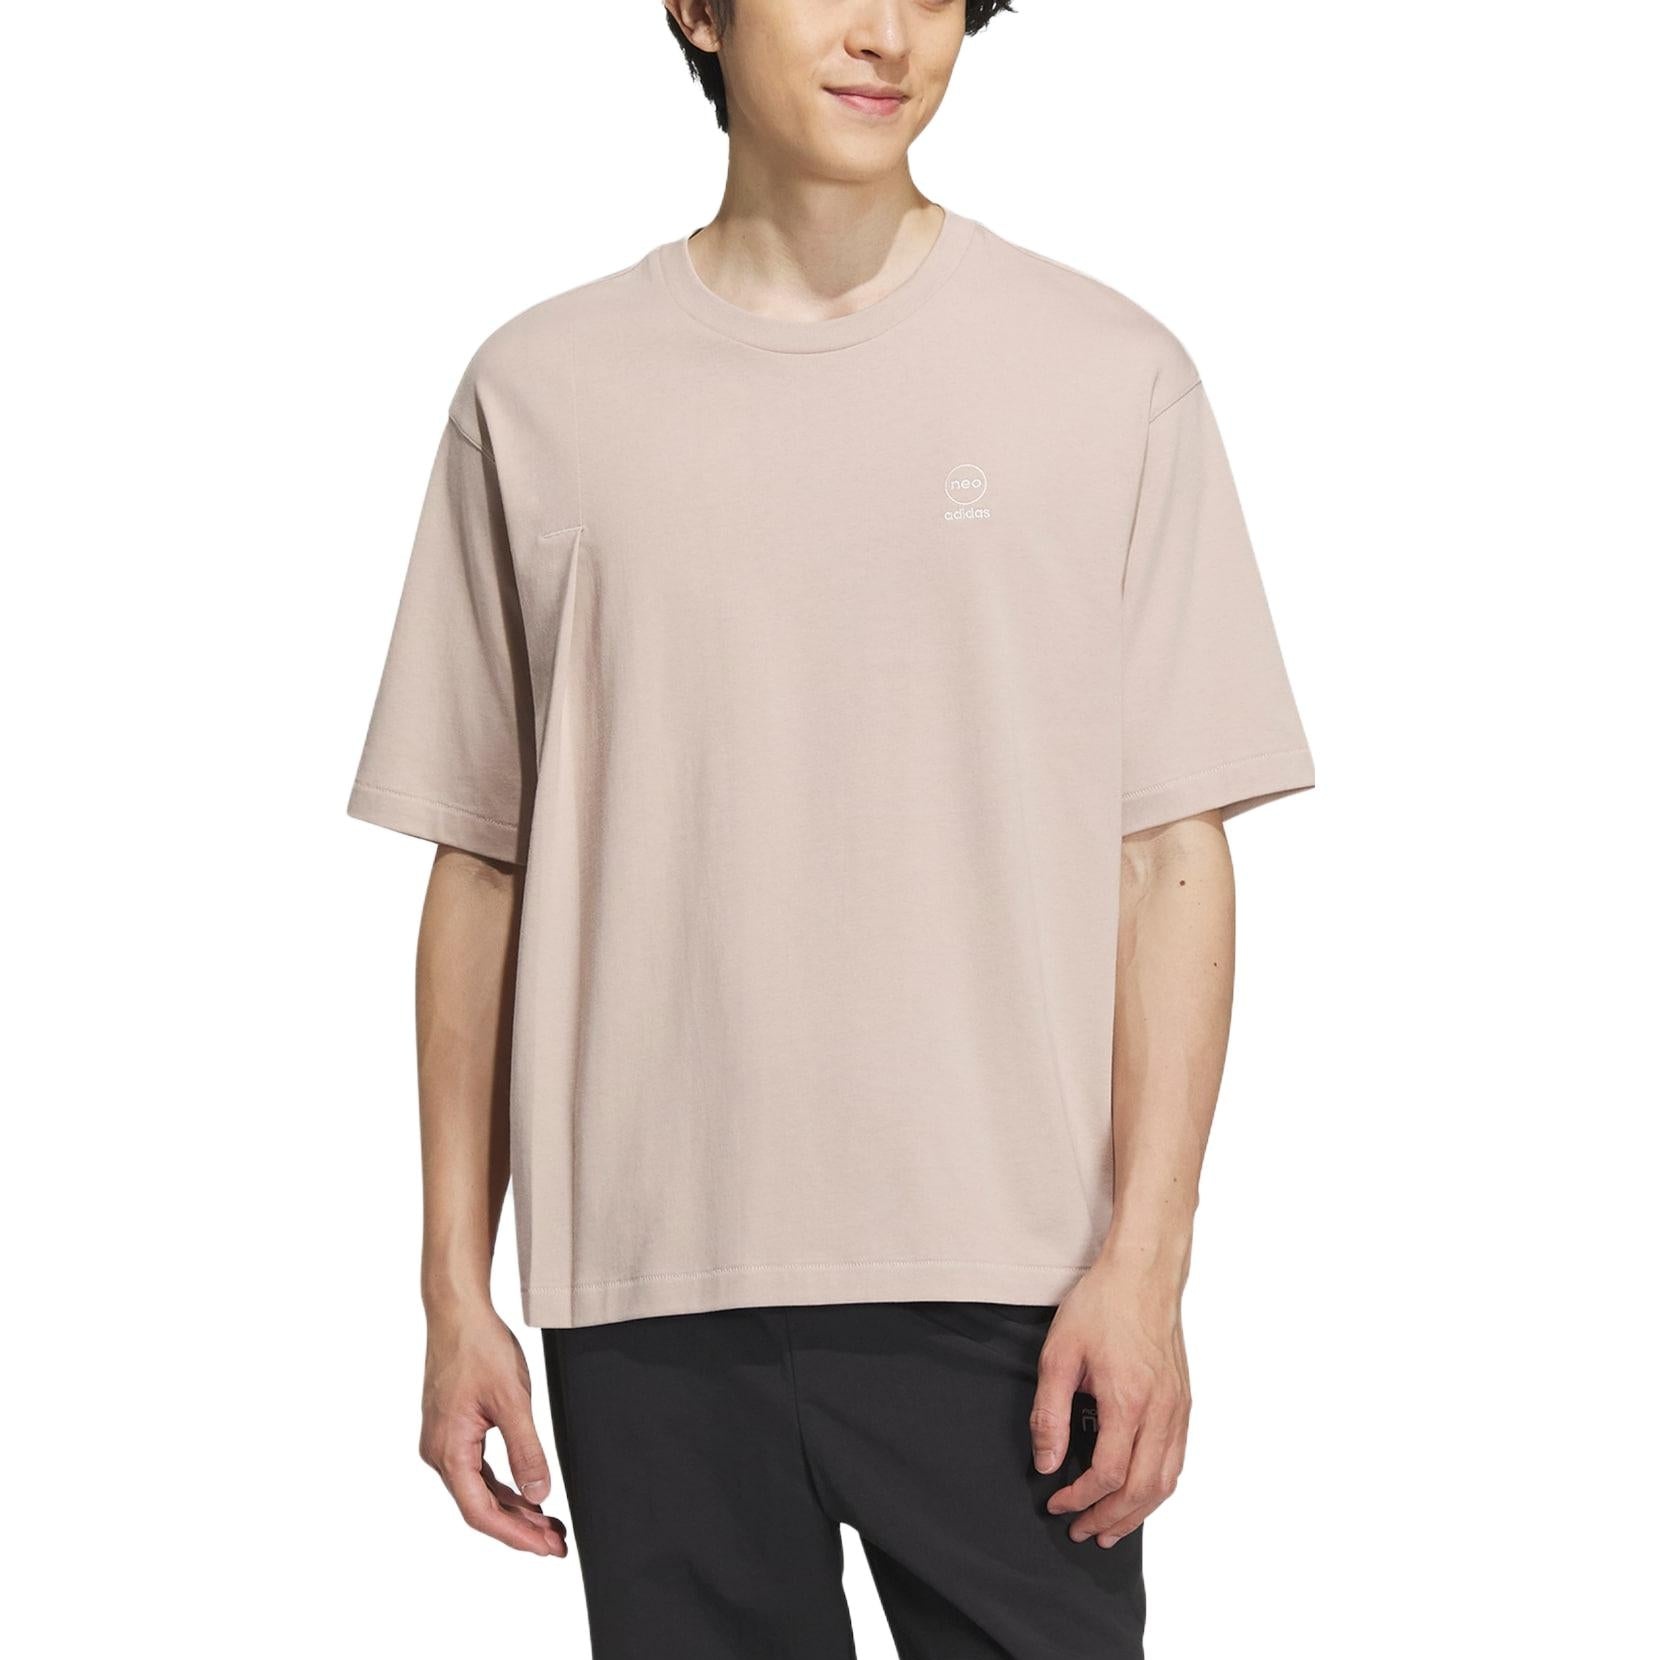 adidas Neo Graphic T-Shirts 'Beige' IK6085 - 2